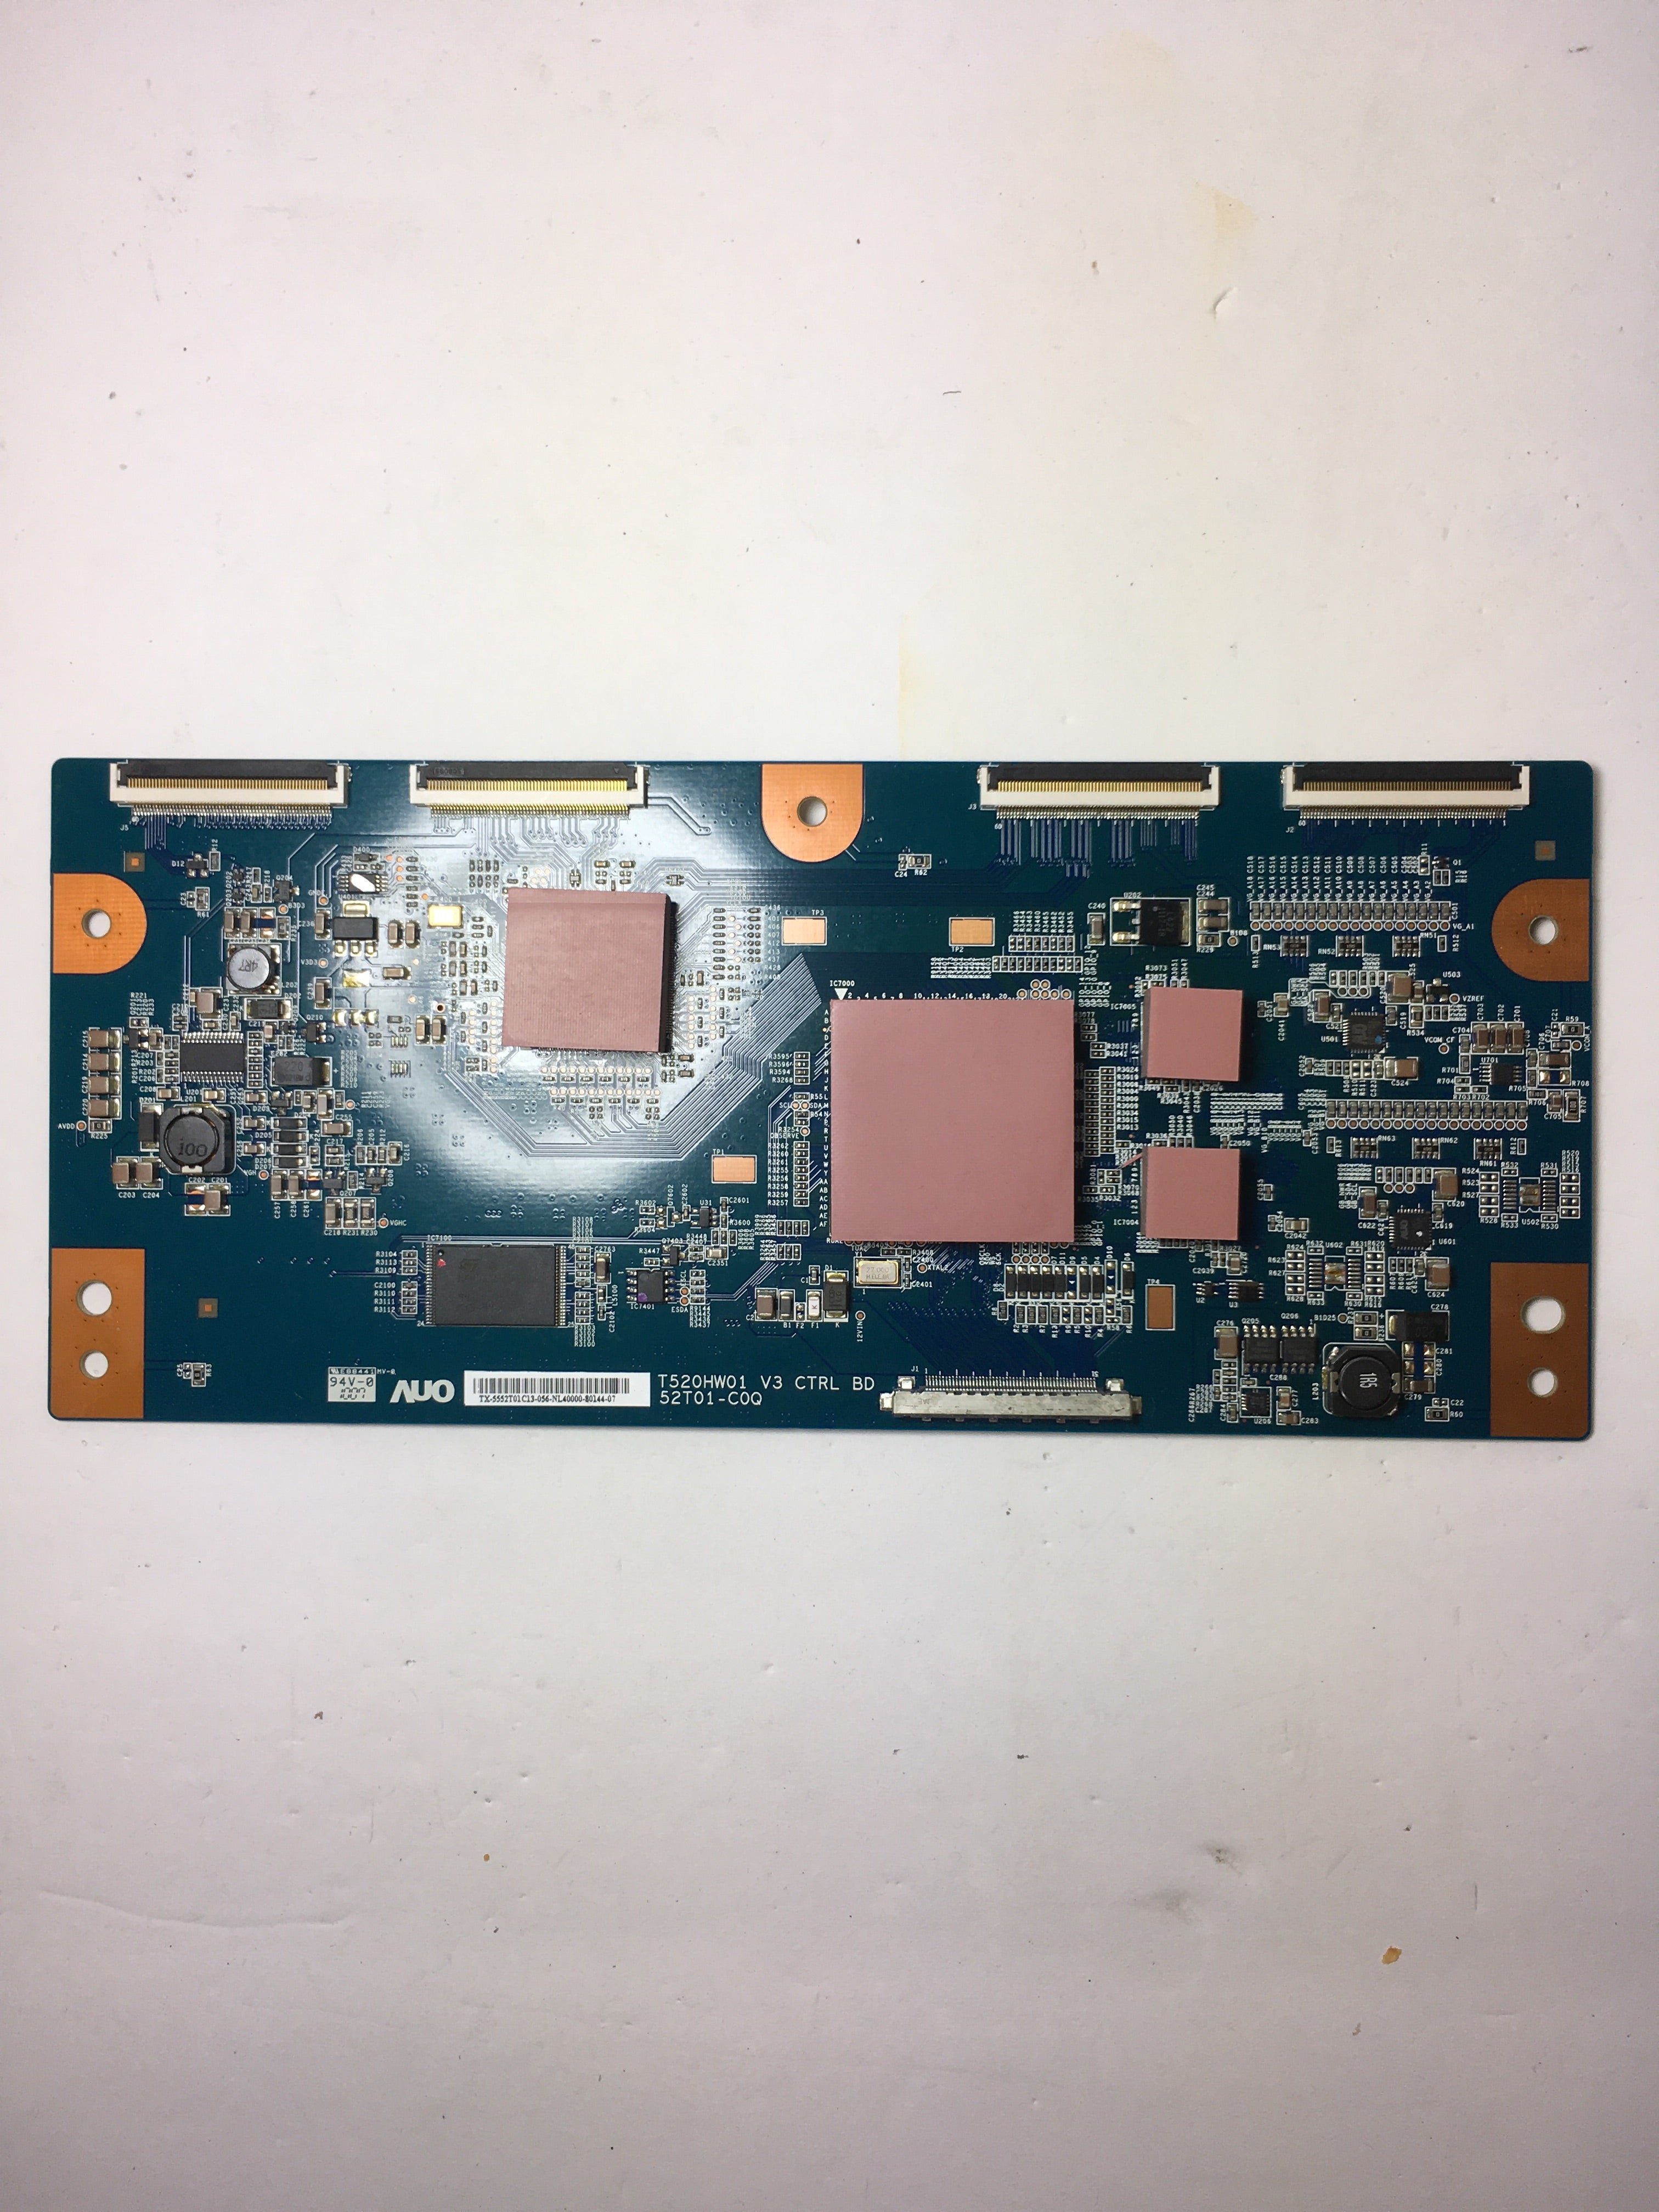 Sanyo 55.52T01.C13 (T520HW01 V3 CB) T-Con Board for DP52440